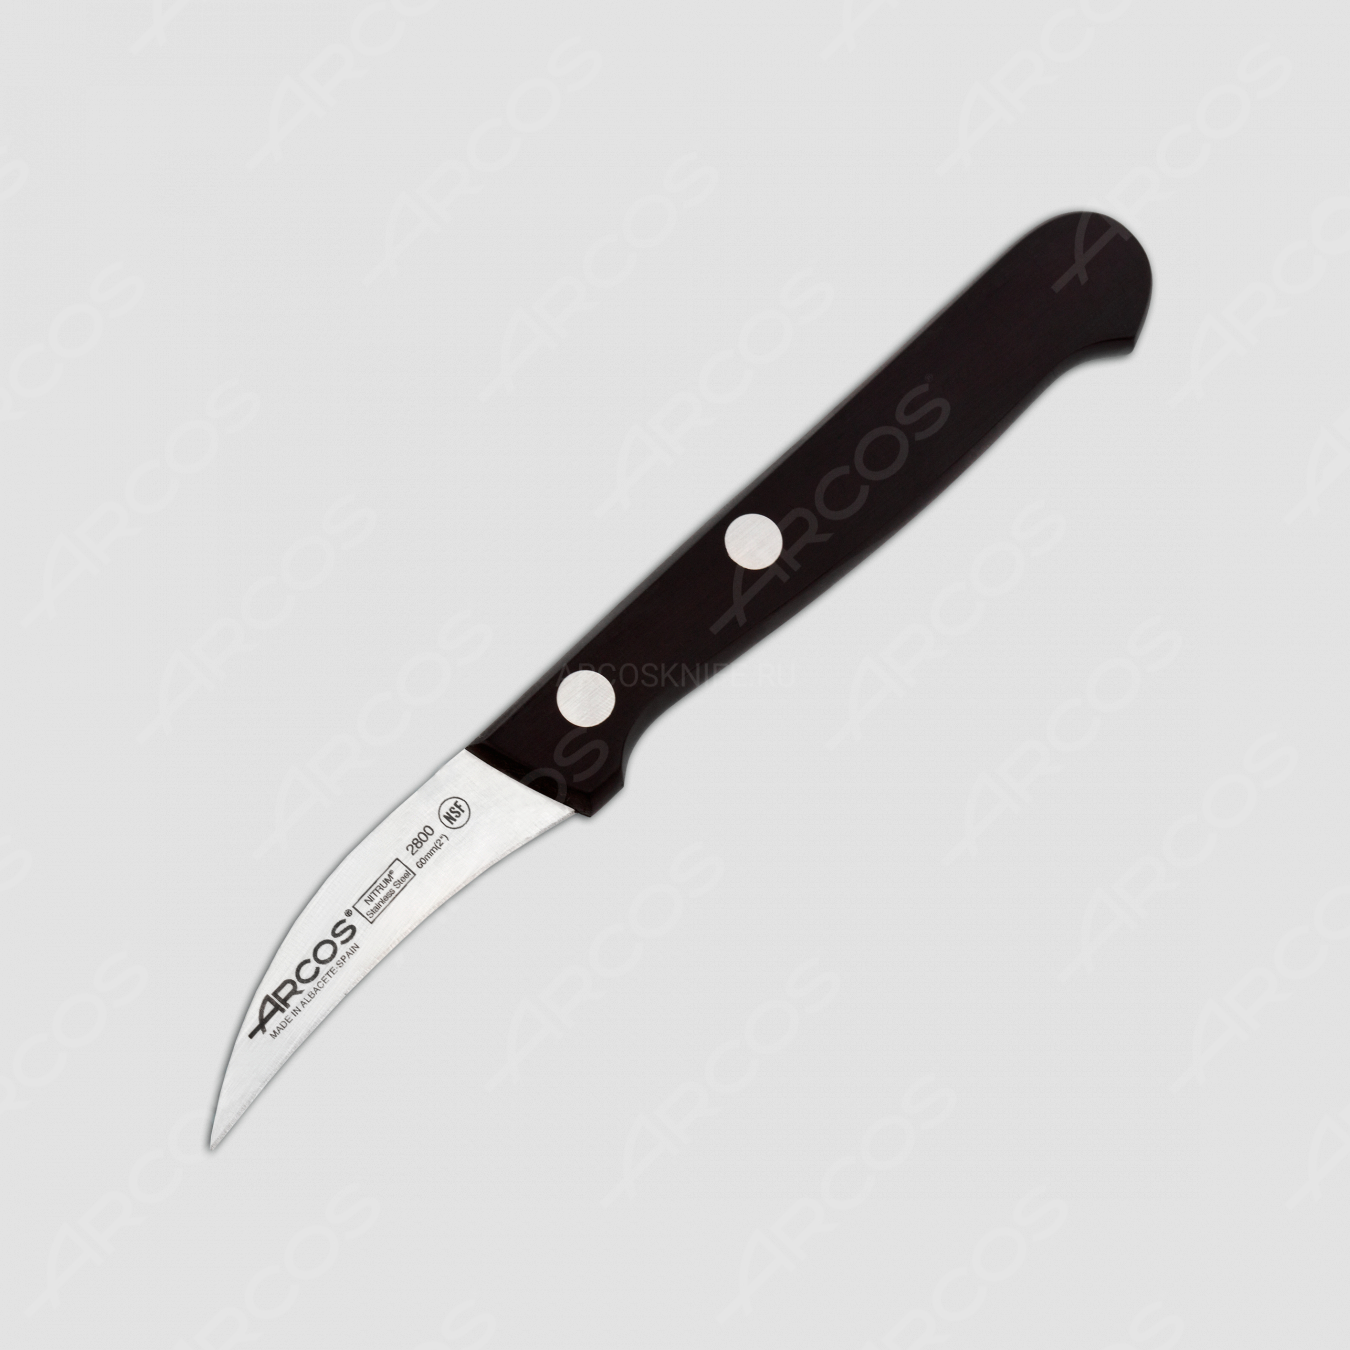 Нож кухонный для чистки 6 см, серия Universal, ARCOS, Испания